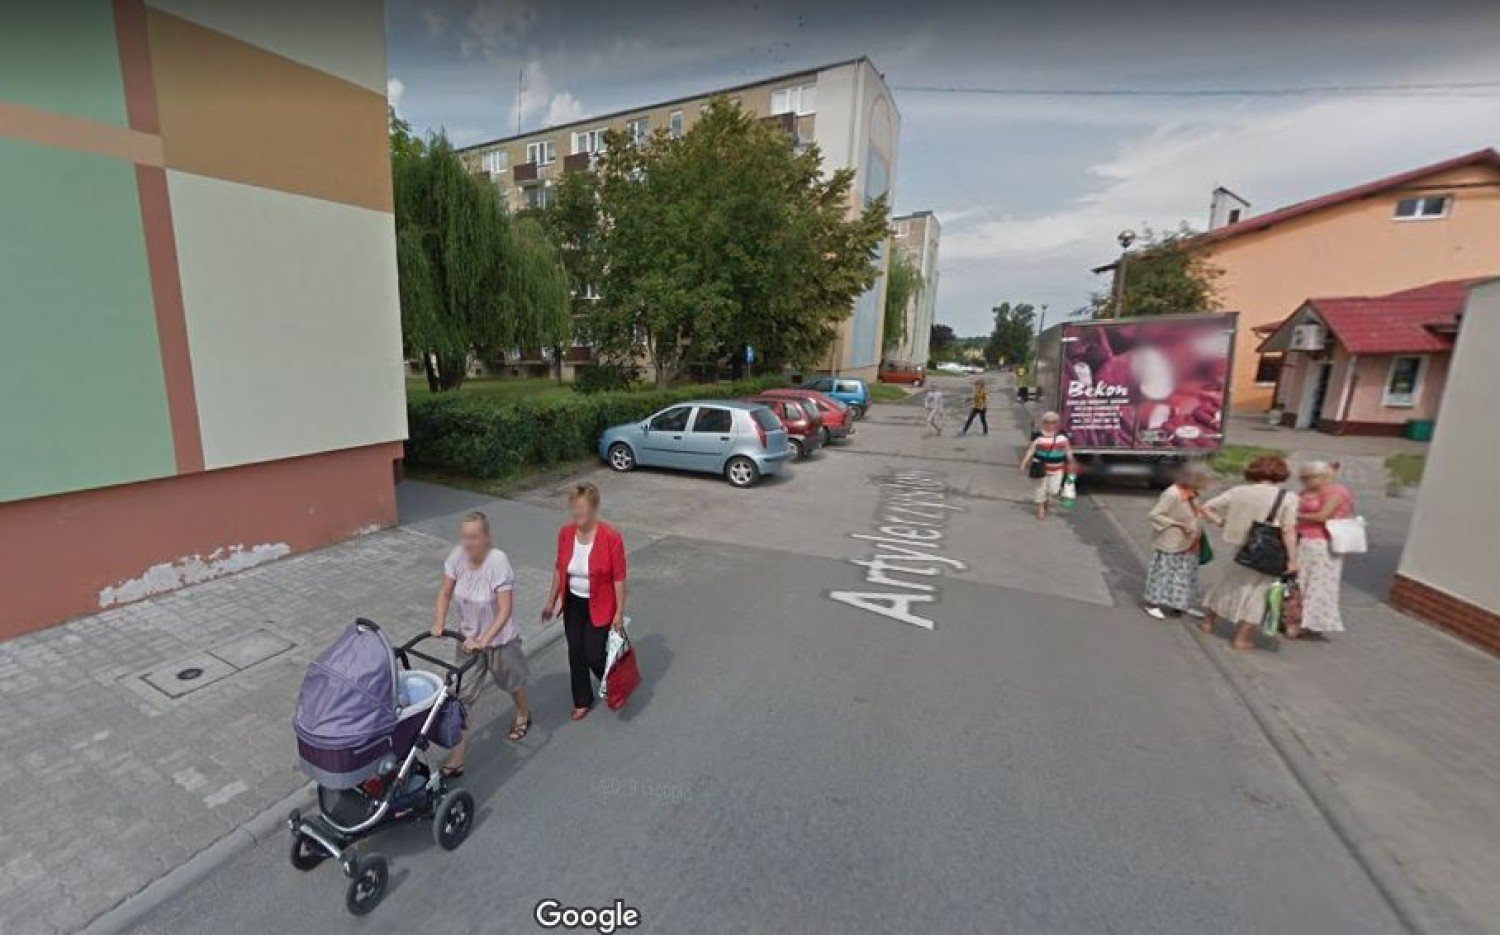 Oto Barcin na Google Street View. Poszukajcie się na